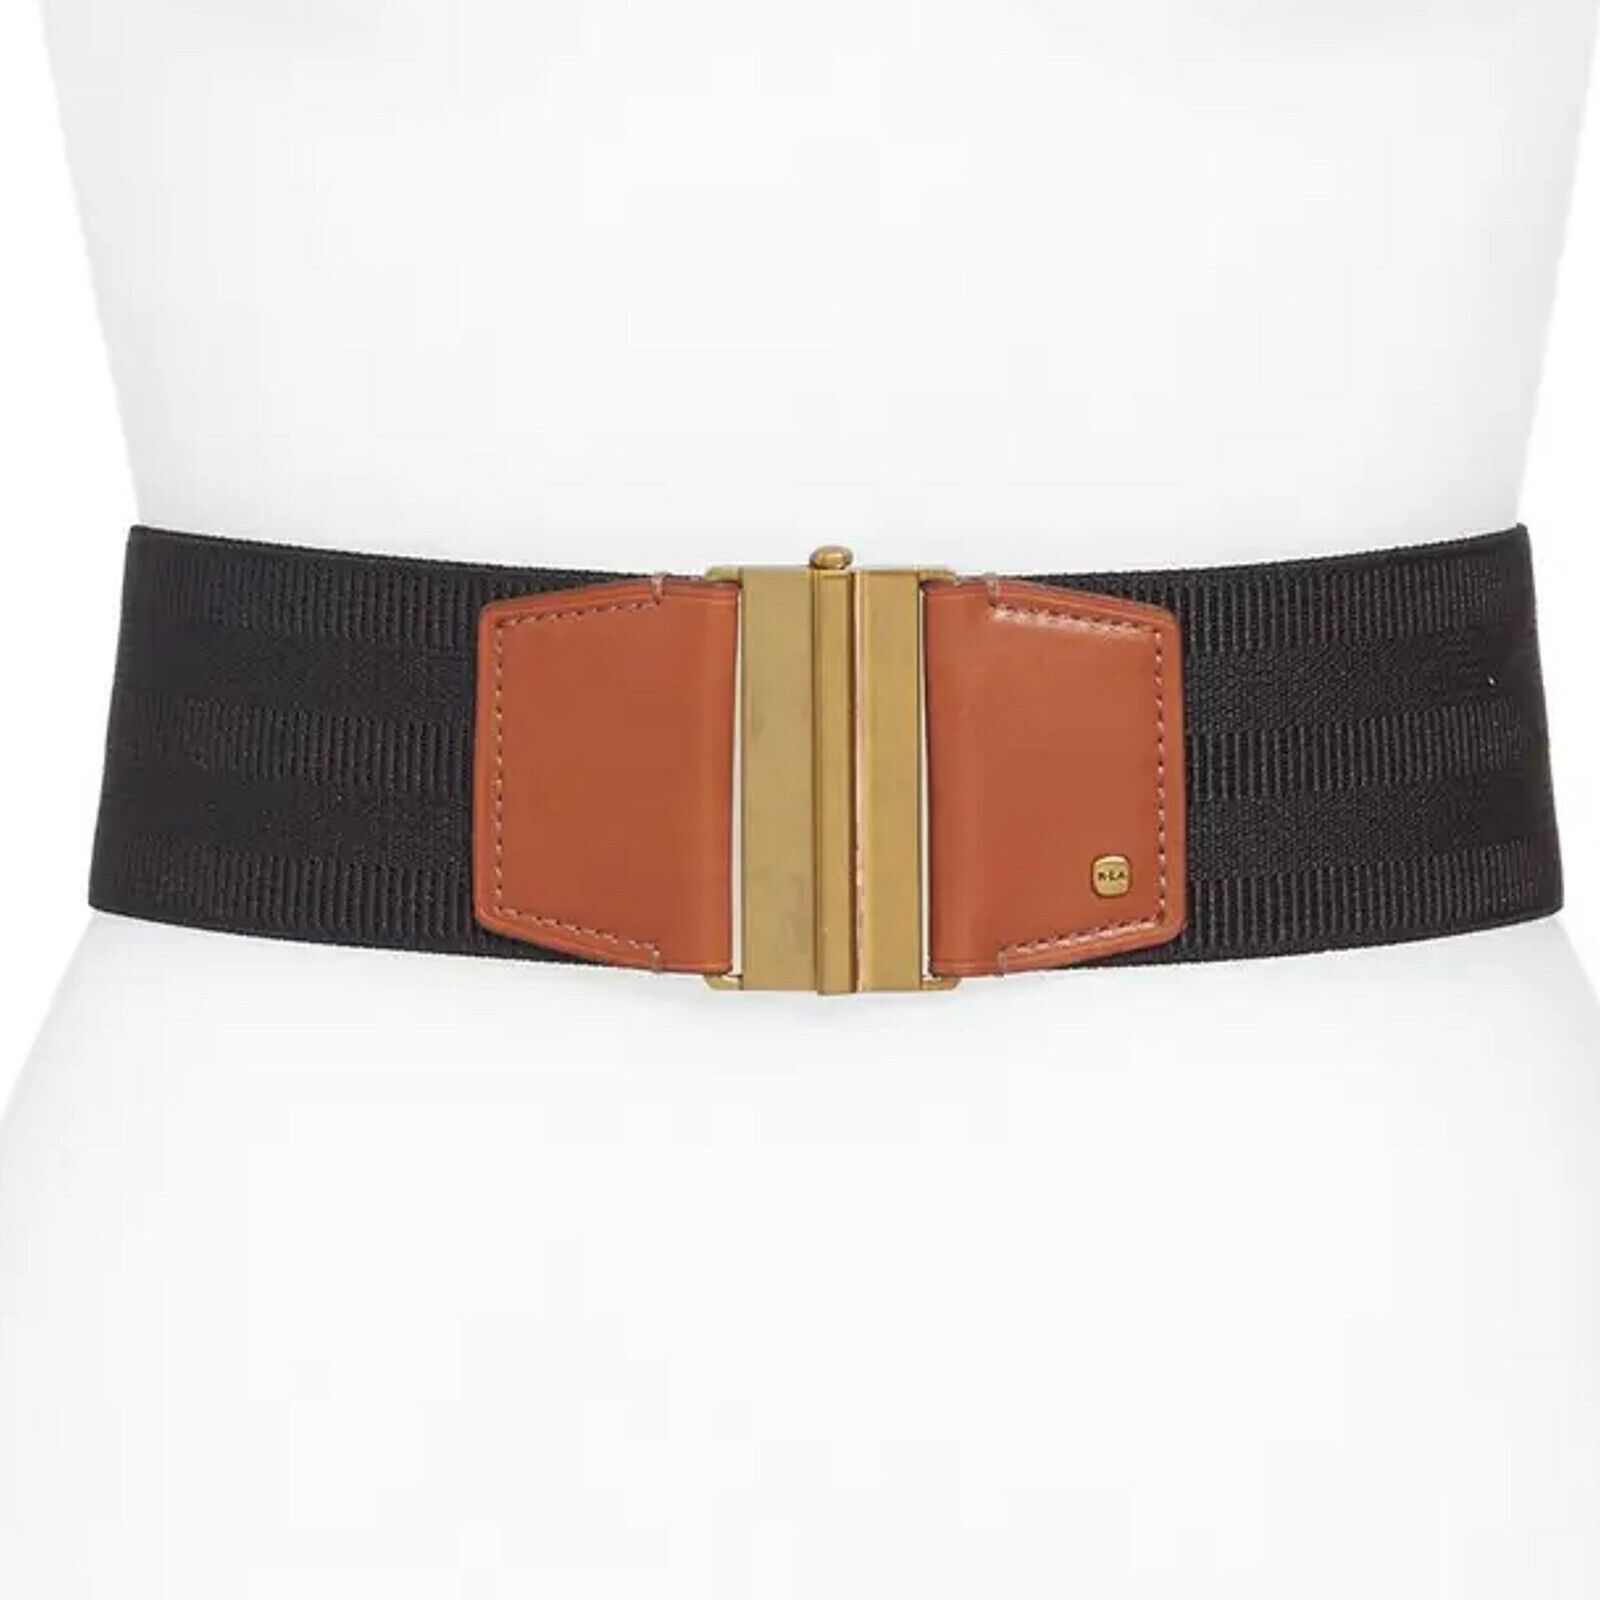 Lauren Ralph Lauren Women's Oval-Logo Reversible Leather Skinny Belt